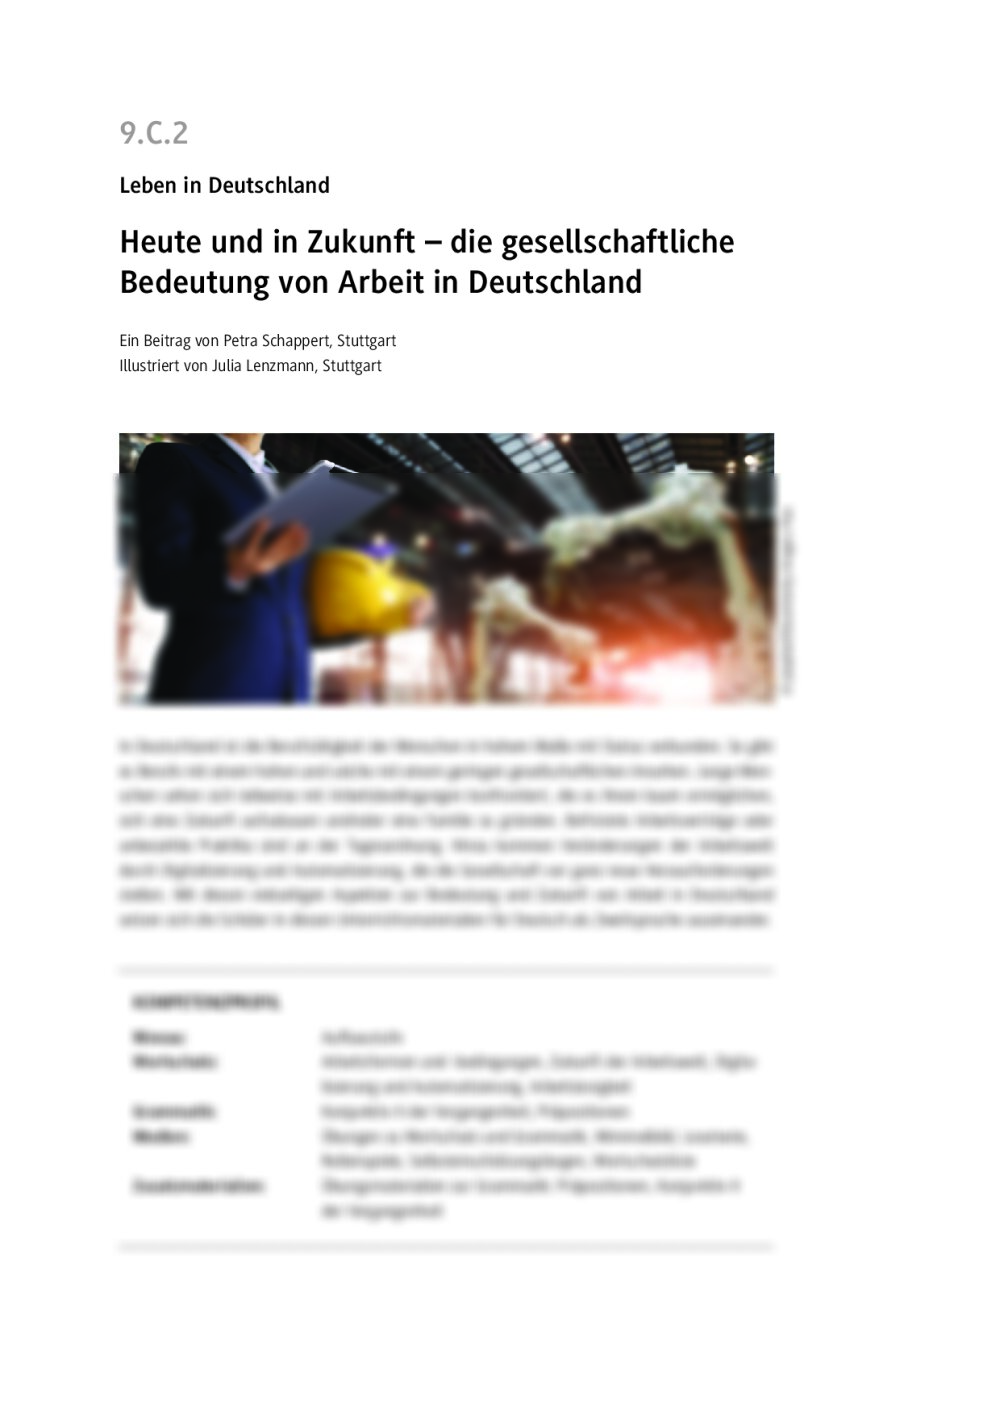 Heute und in Zukunft: die gesellschaftliche Bedeutung von Arbeit in Deutschland - Seite 1